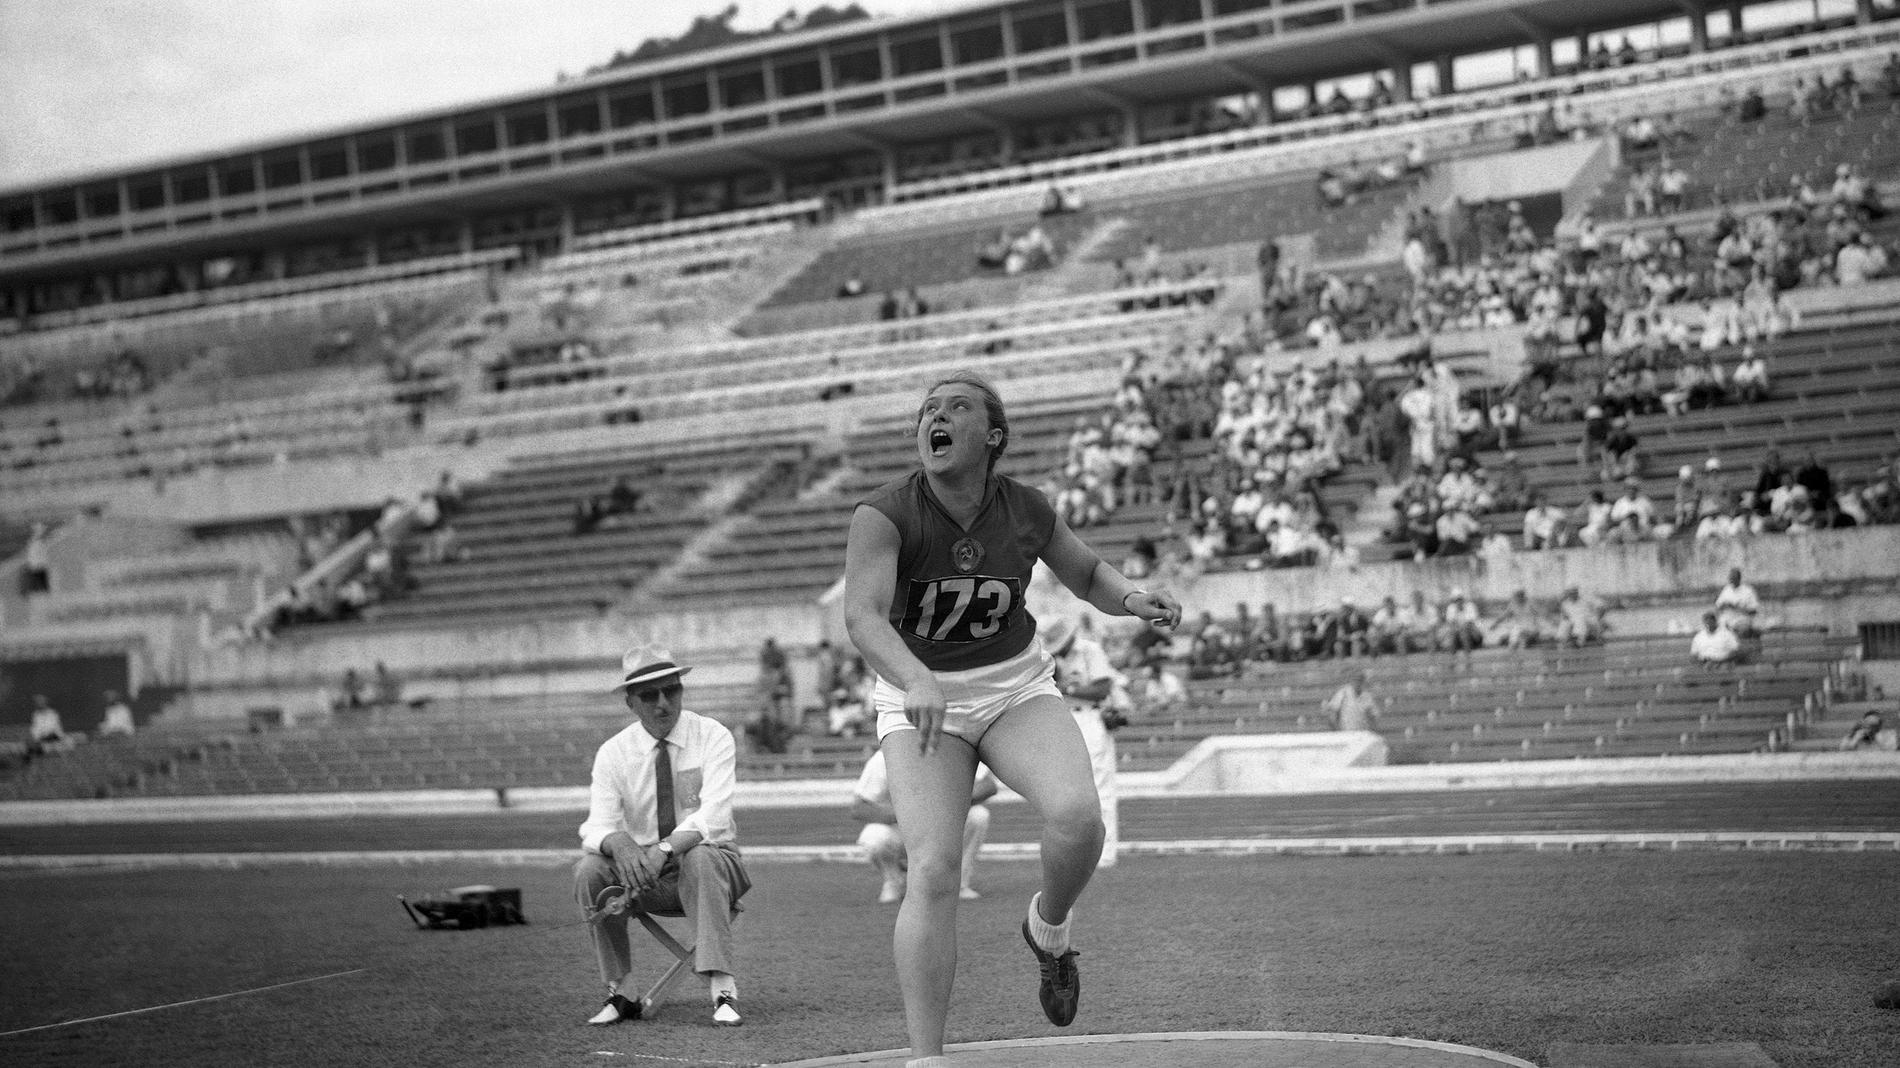 Tamara Press har just stött iväg kulan i kvalet i OS i Rom 1960. Hon skulle senare ta guld i grenen. Press avled i april, 83 år gammal.